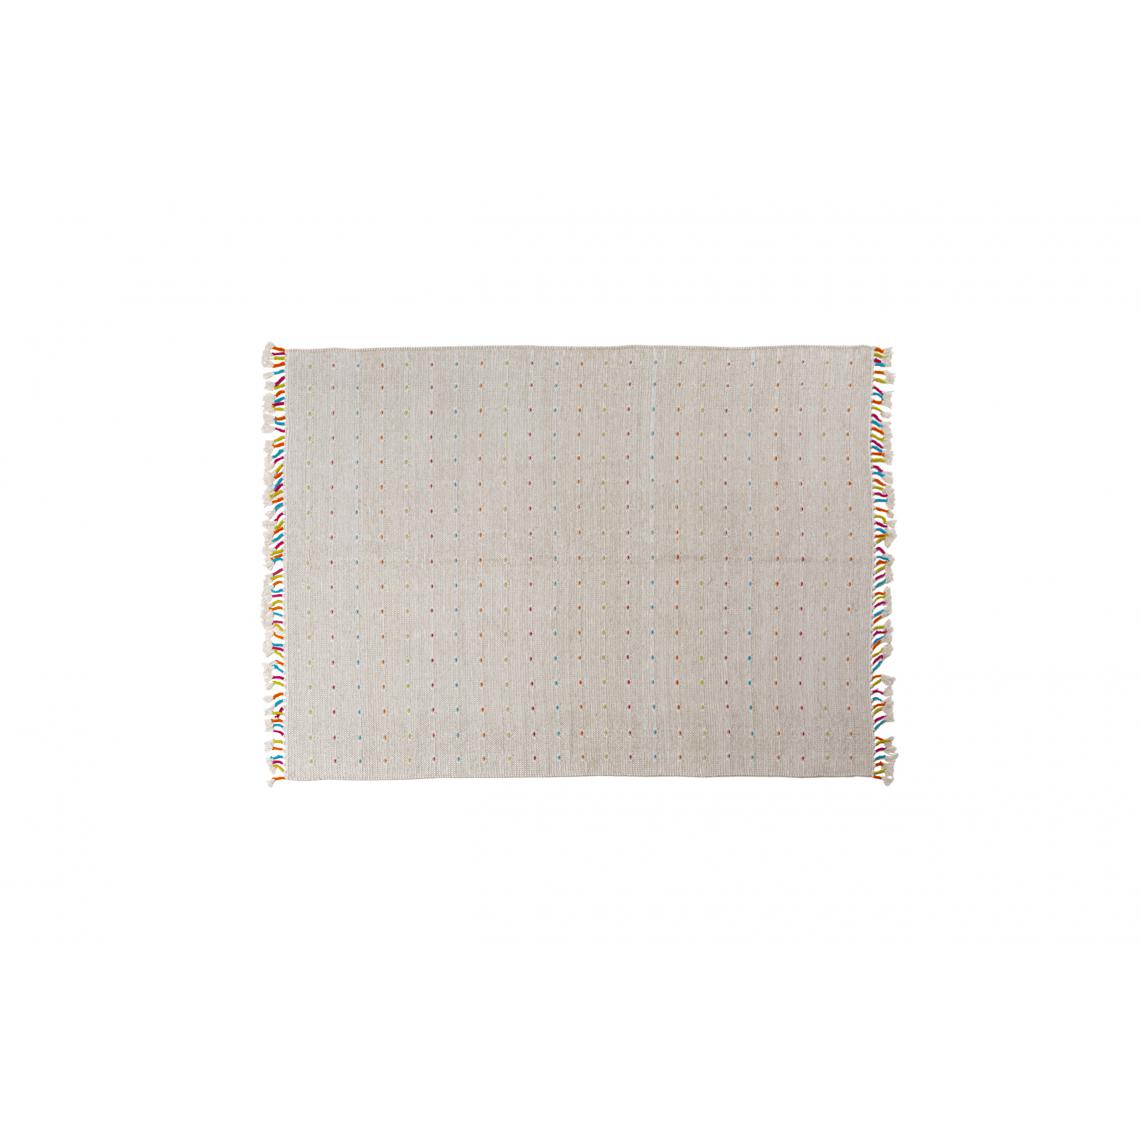 Alter - Tapis Texas moderne, style kilim, 100% coton, ivoire, 170x110cm - Tapis